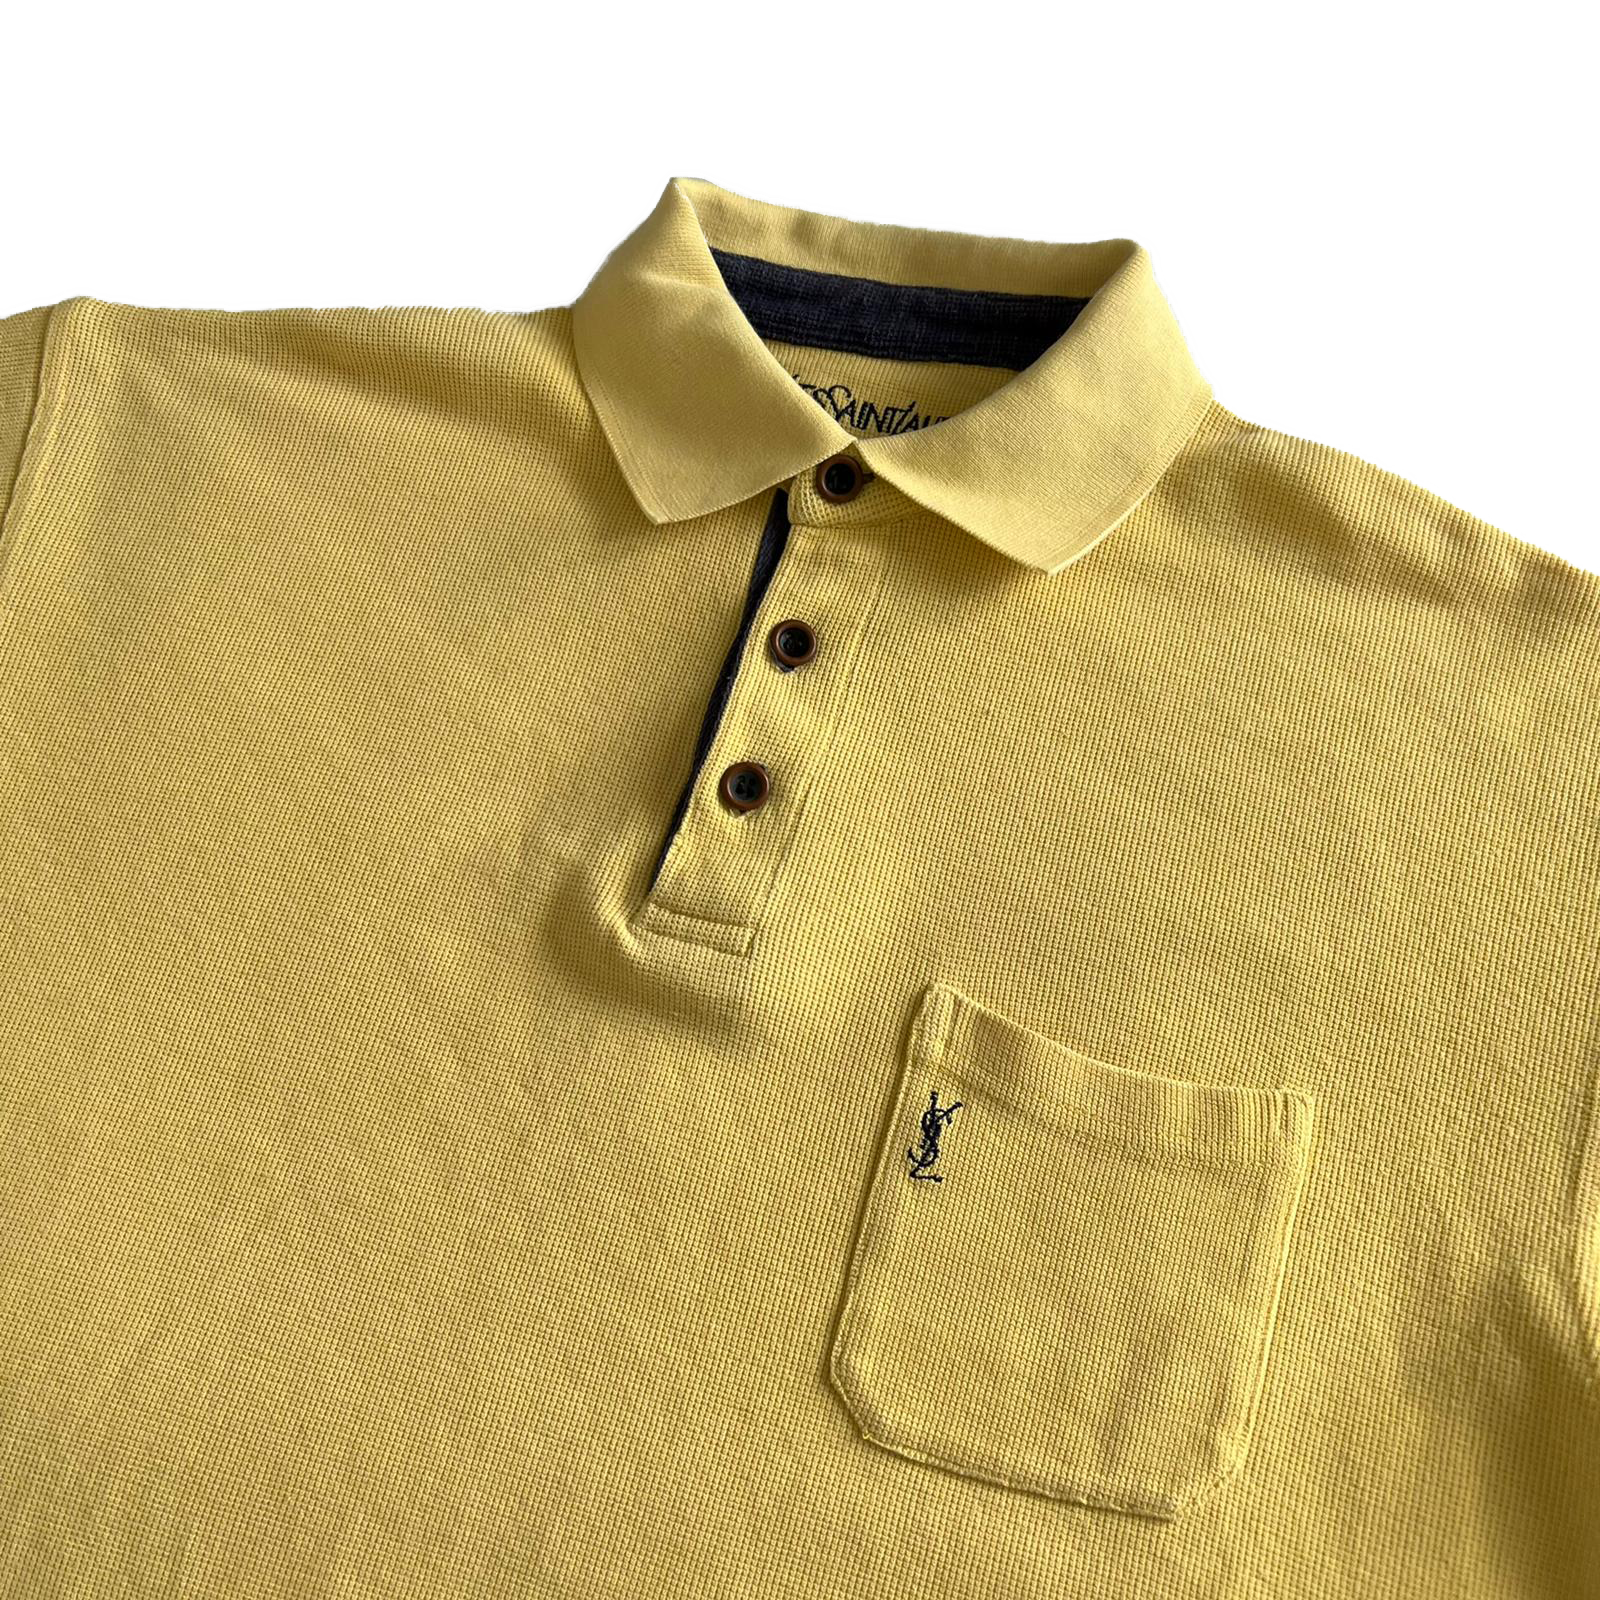 90's YSL polo shirt